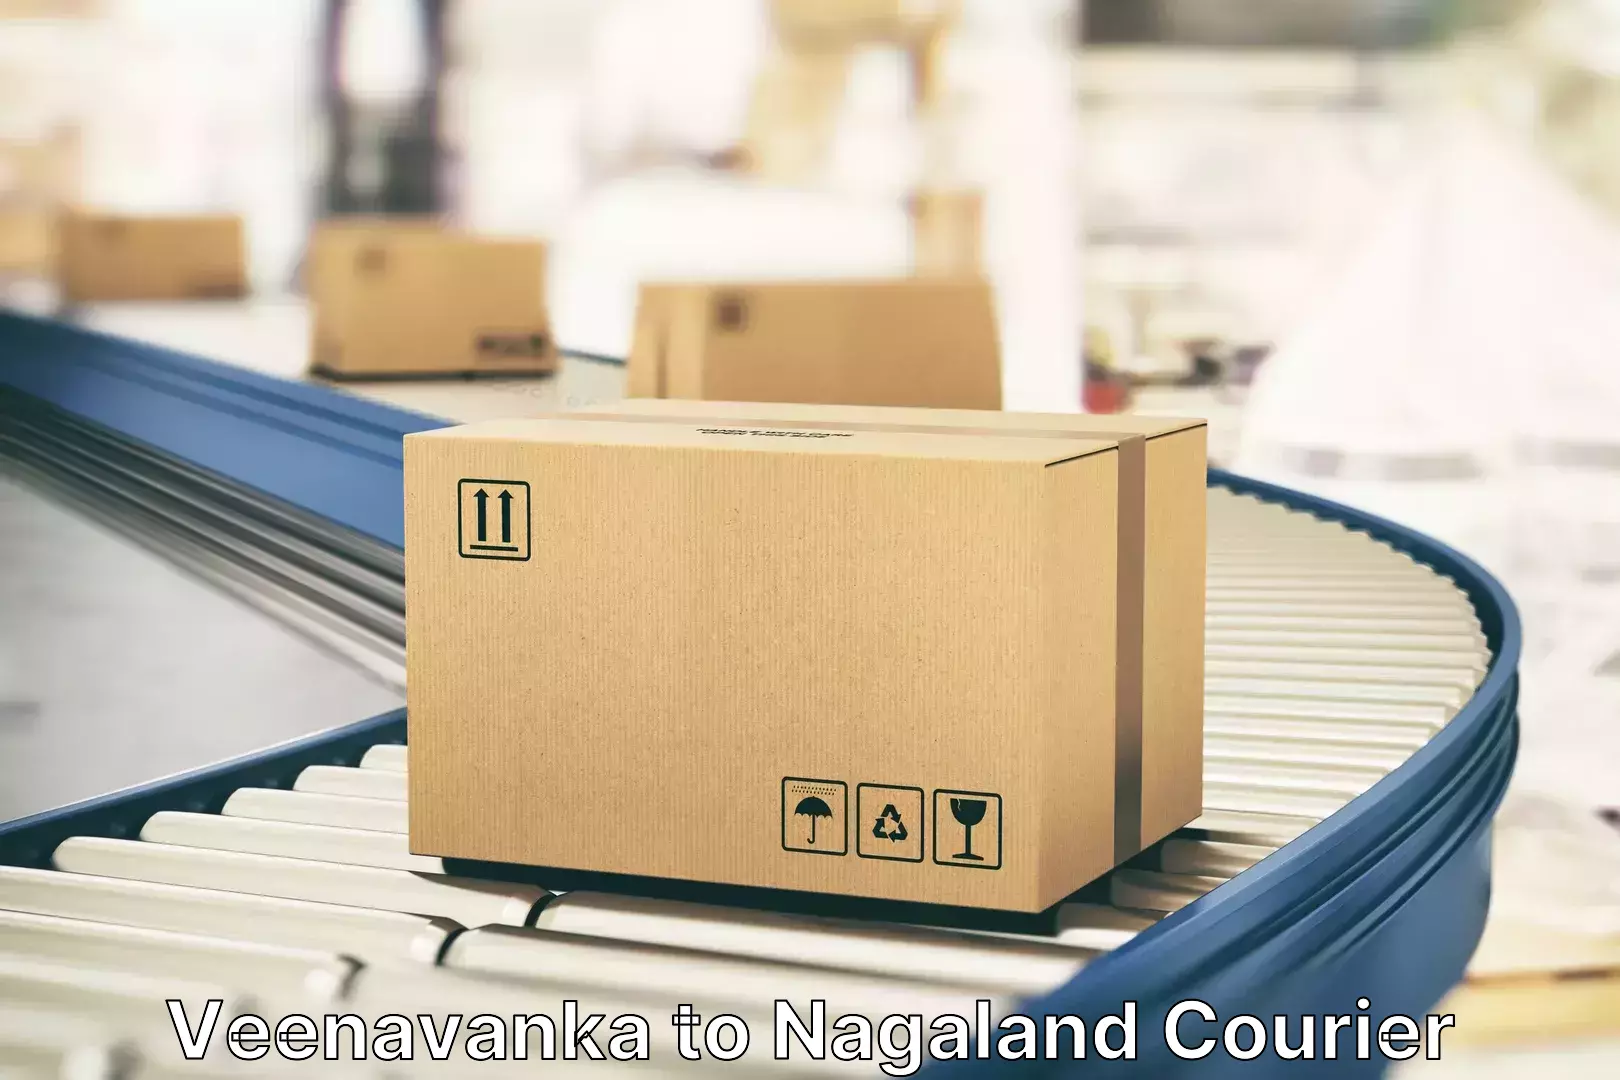 Luggage shipping service Veenavanka to NIT Nagaland